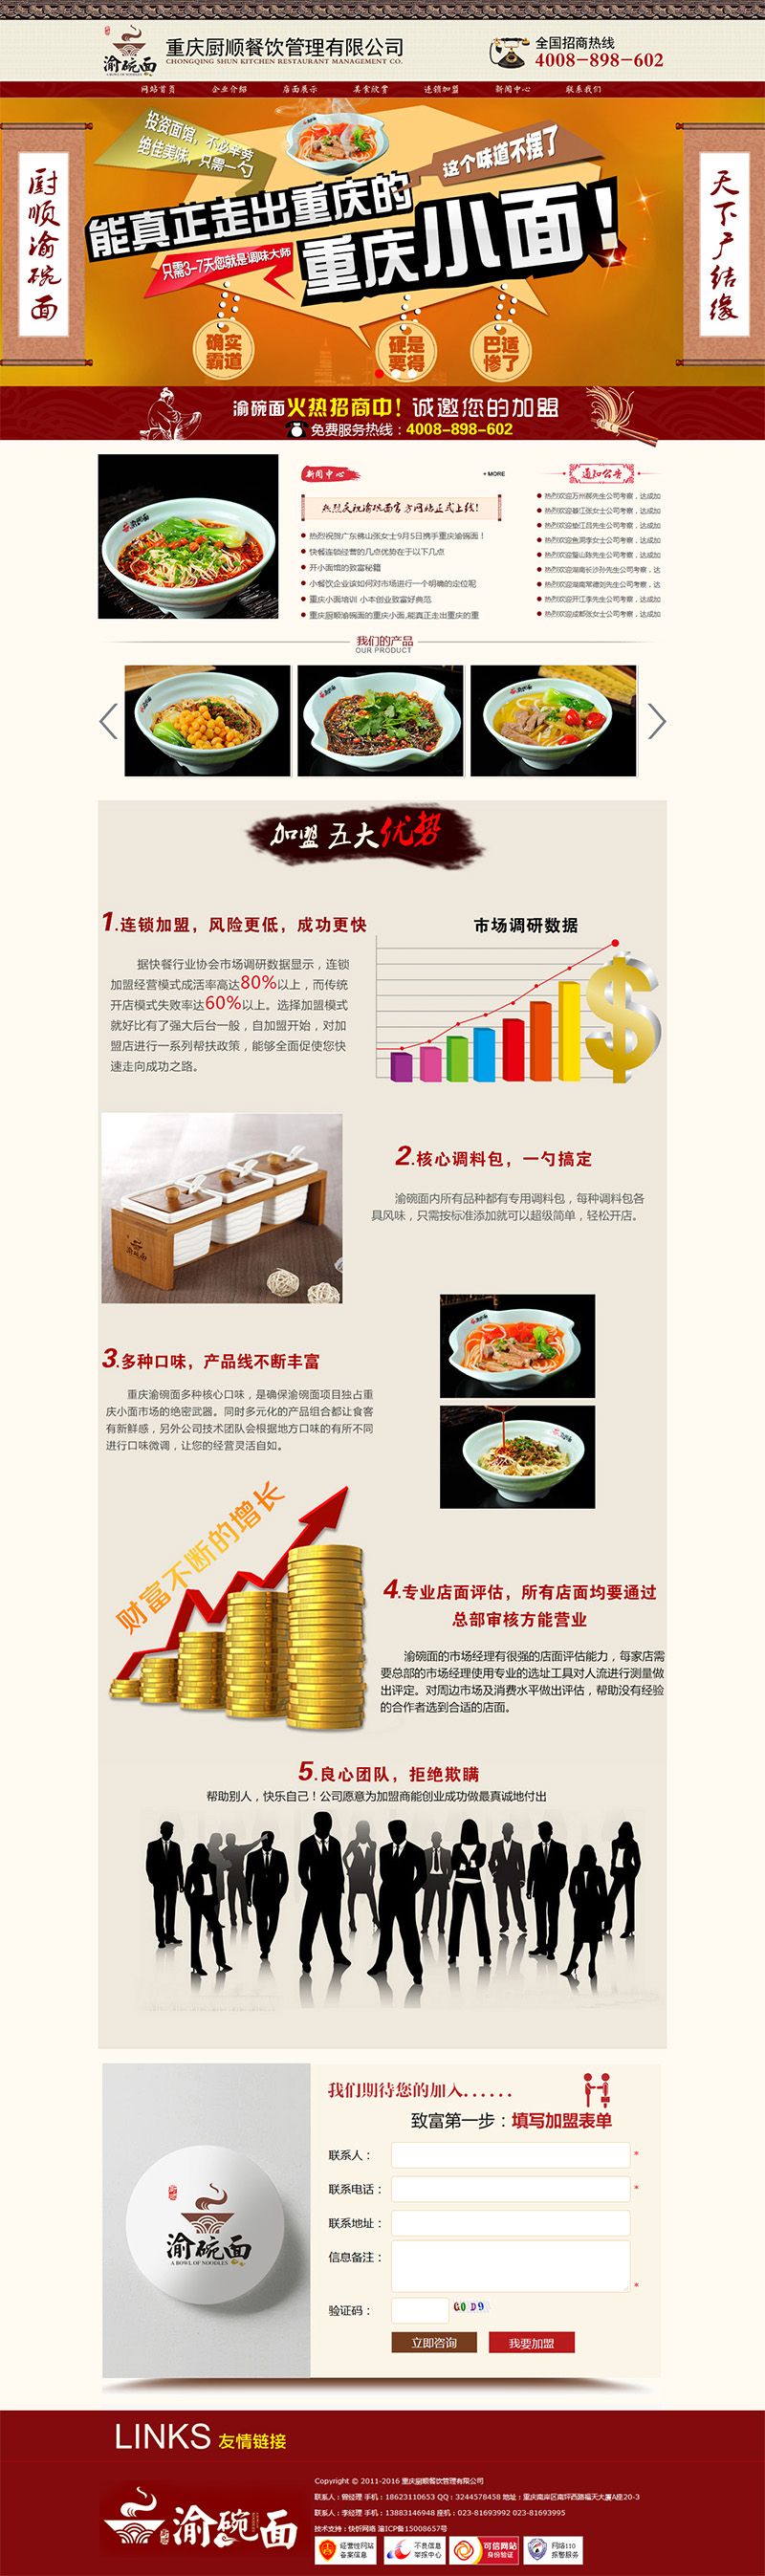 重庆厨顺餐饮管理有限公司网站建设案例